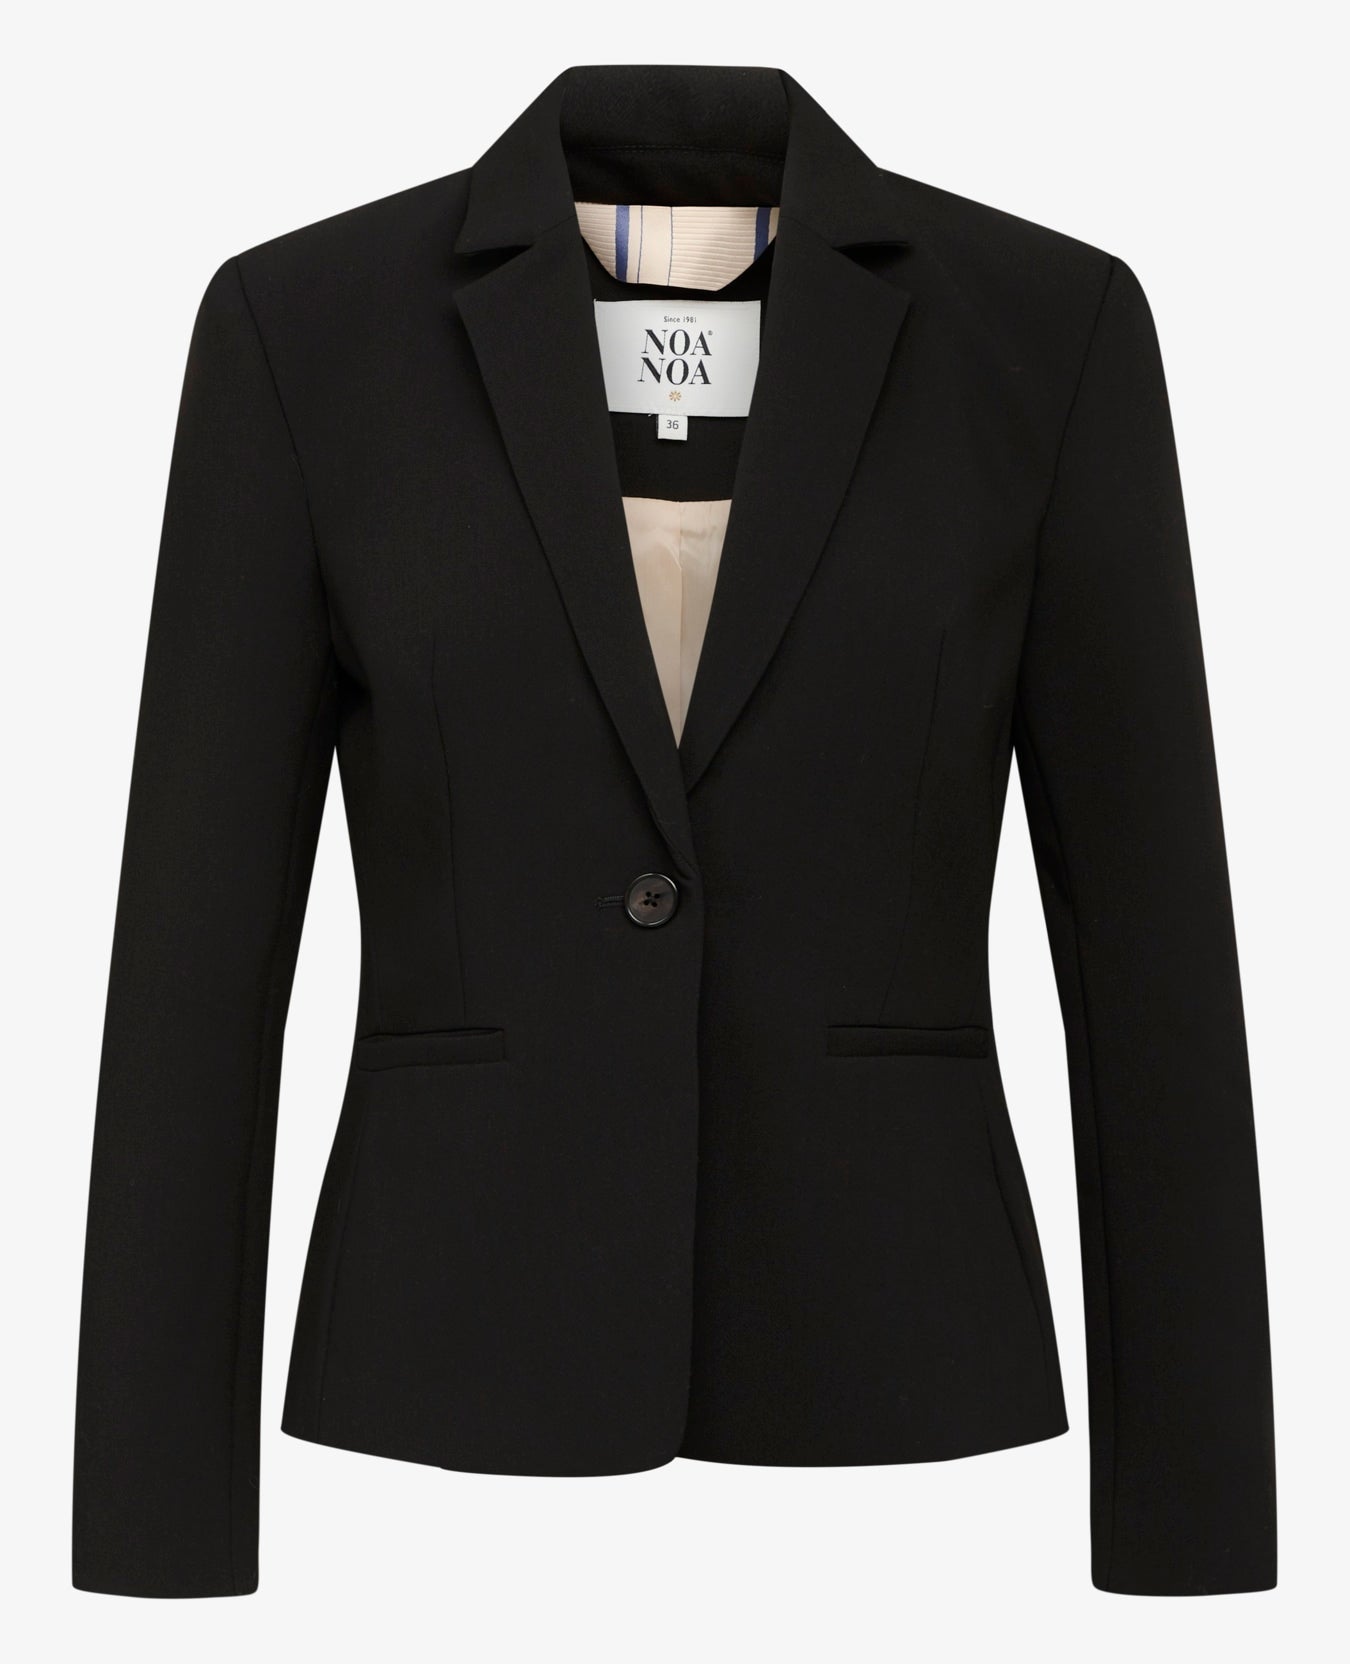 Noa Noa Felicia Suit Jacket - Black